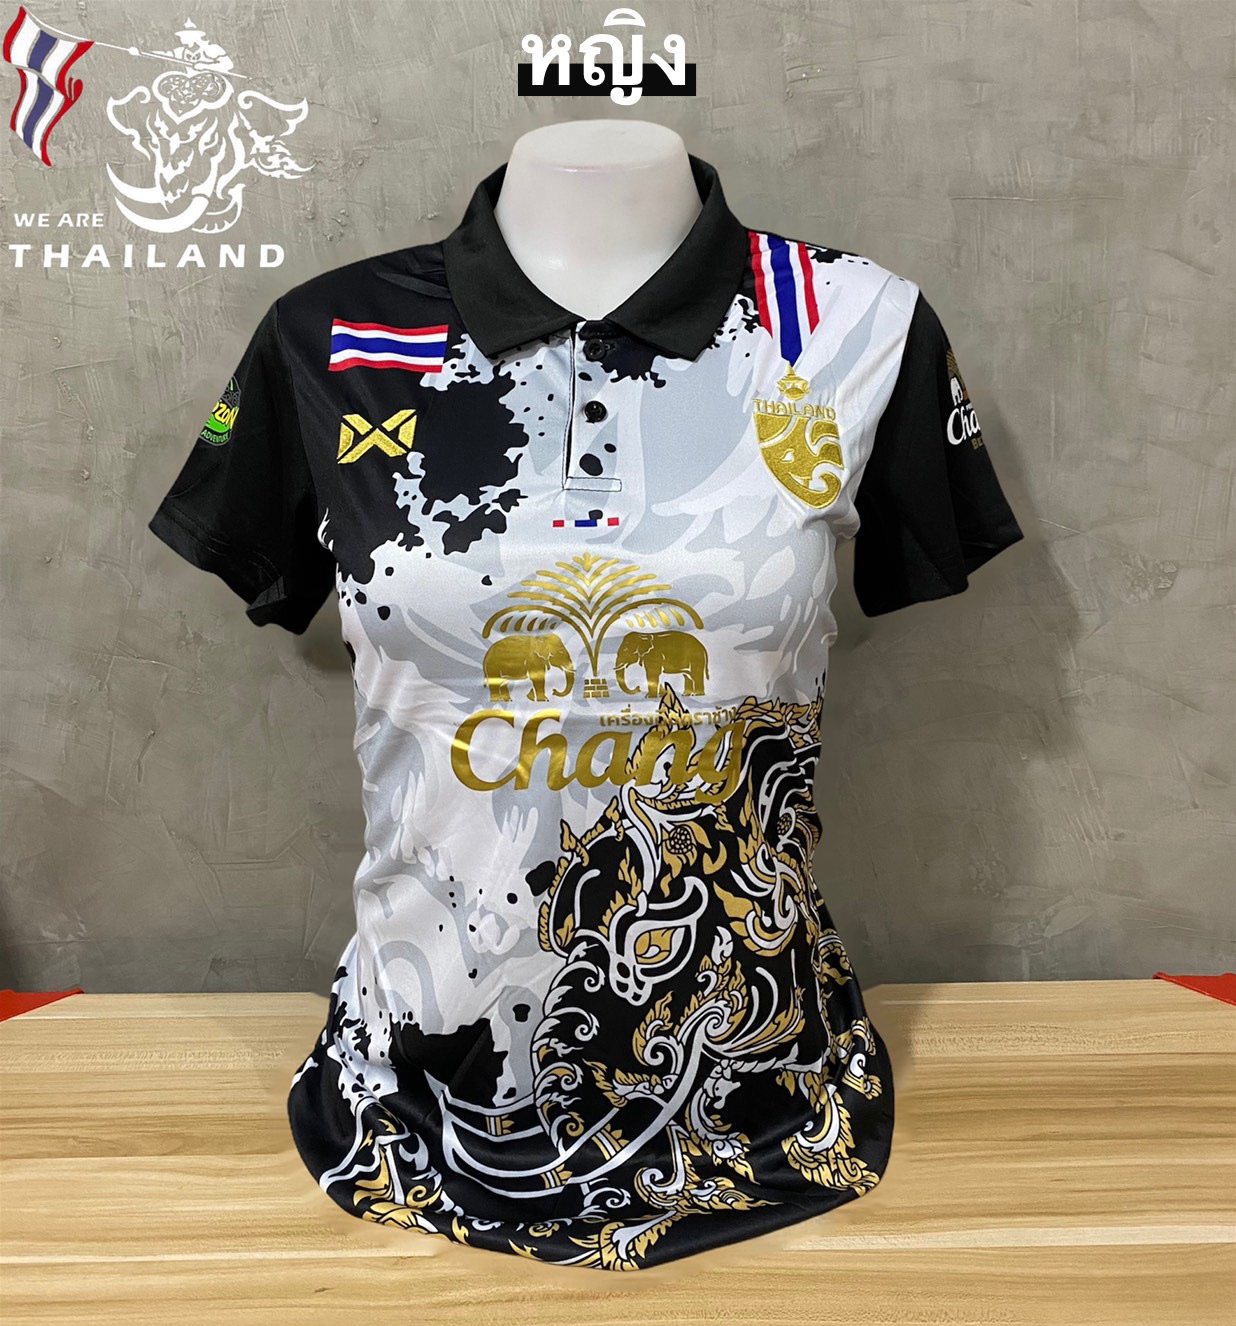 เสื้อบอลทีชาติไทย คอปกชมพู งานสวยมาก ขนาดฟรีไซด์อก32-38 นิ้ว